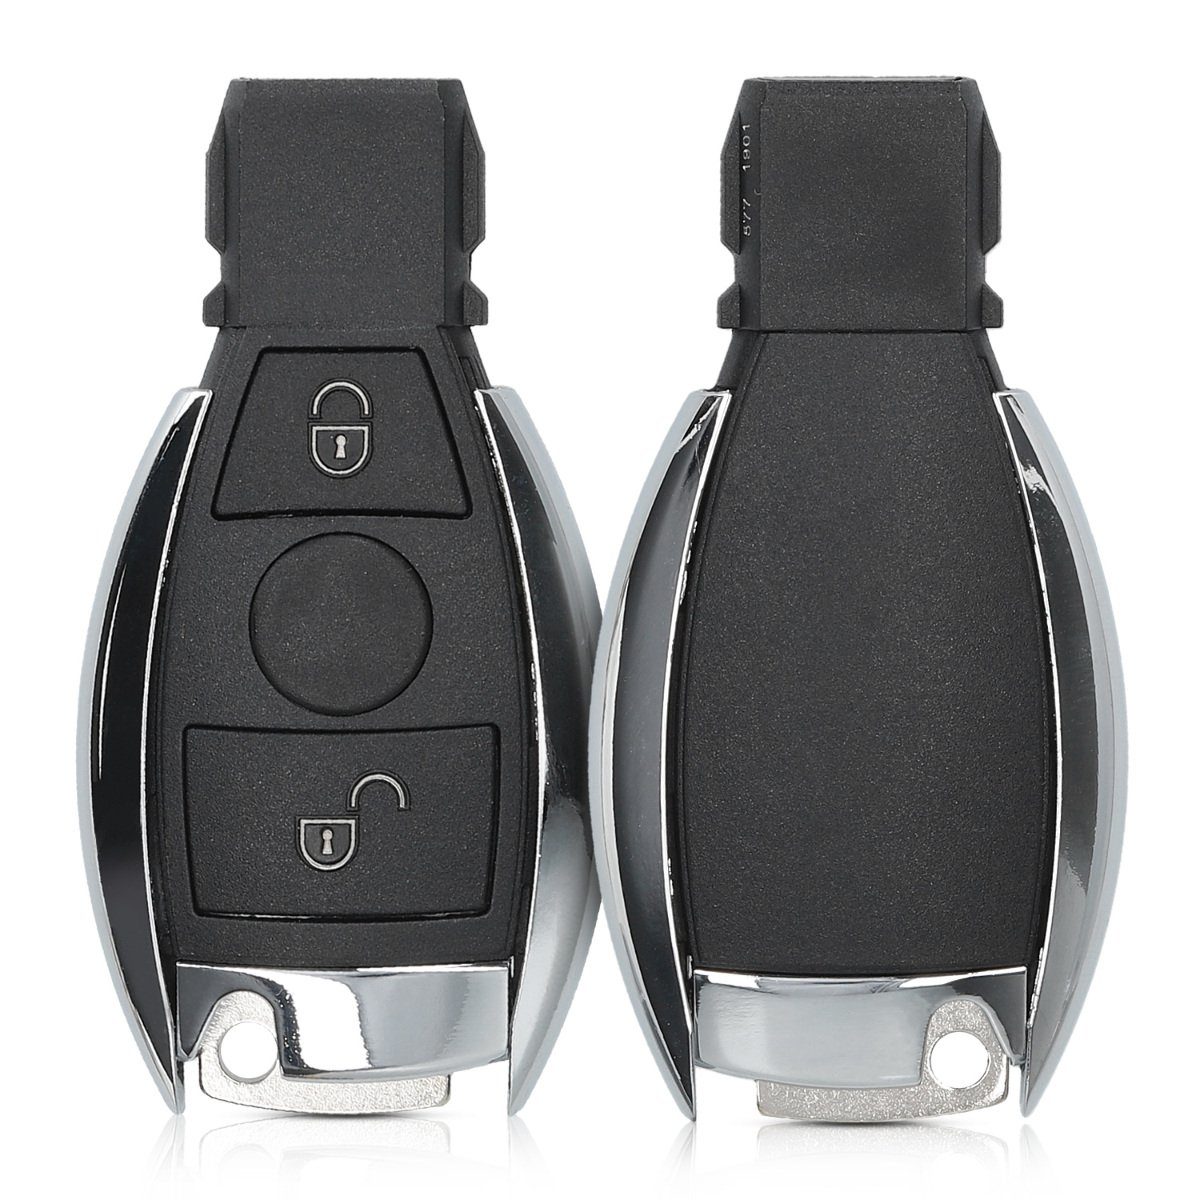 kwmobile Schlüsseltasche Gehäuse für Mercedes Benz Autoschlüssel (1-tlg), ohne Transponder Batterien Elektronik - Auto Schlüsselgehäuse